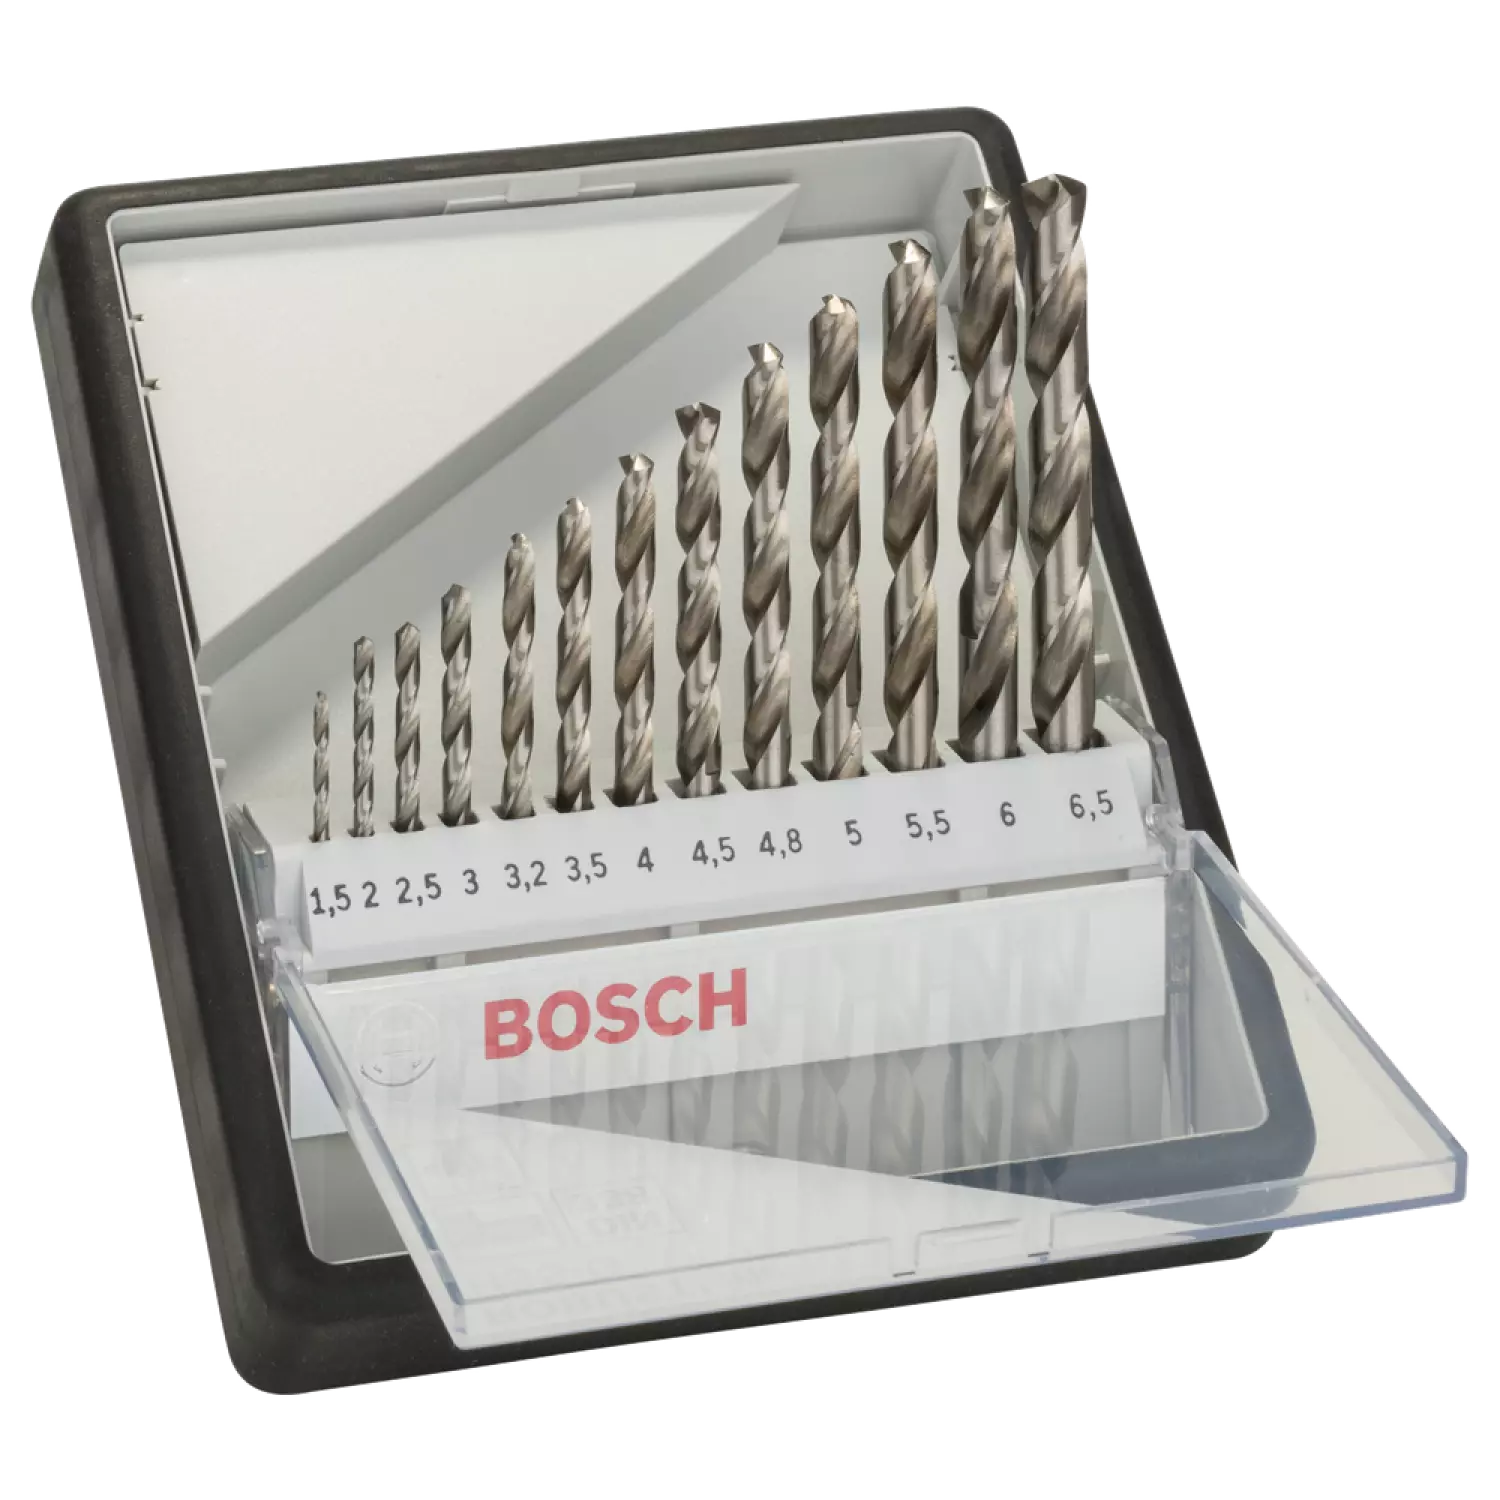 Bosch 2607010538 - Set 13 pièces foret à métaux Robust Line HSS-G 135° 1,5; 2; 2,5; 3; 3,2; 3,5; 4; 4,5; 4,8; 5; 5,5; 6; 6,5 mm